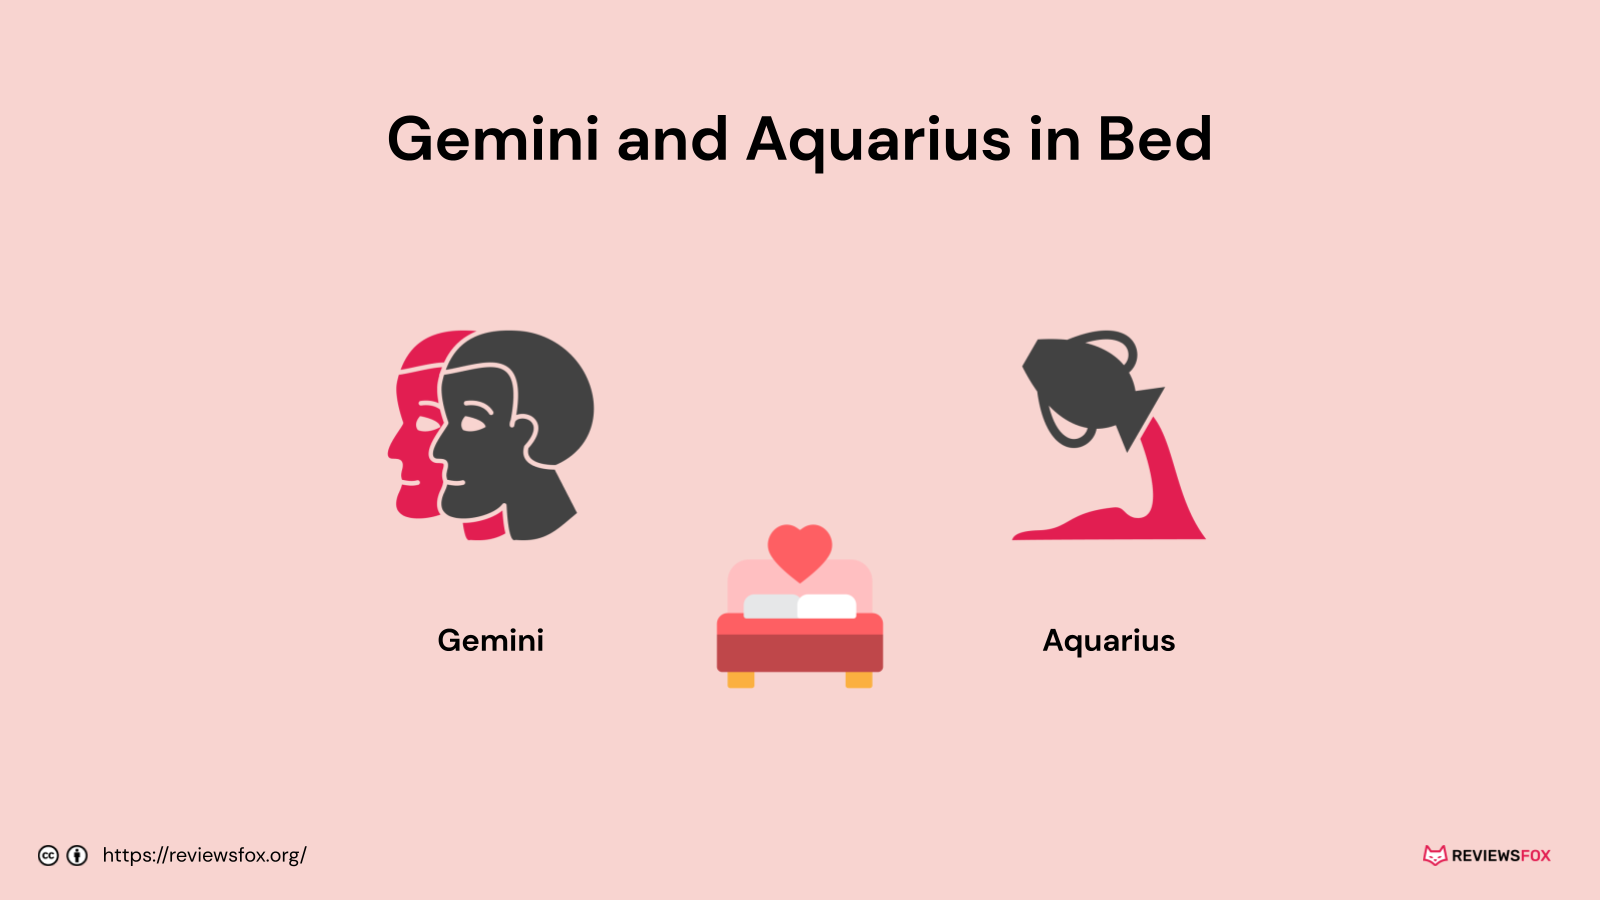 Gemini and Aquarius in bed